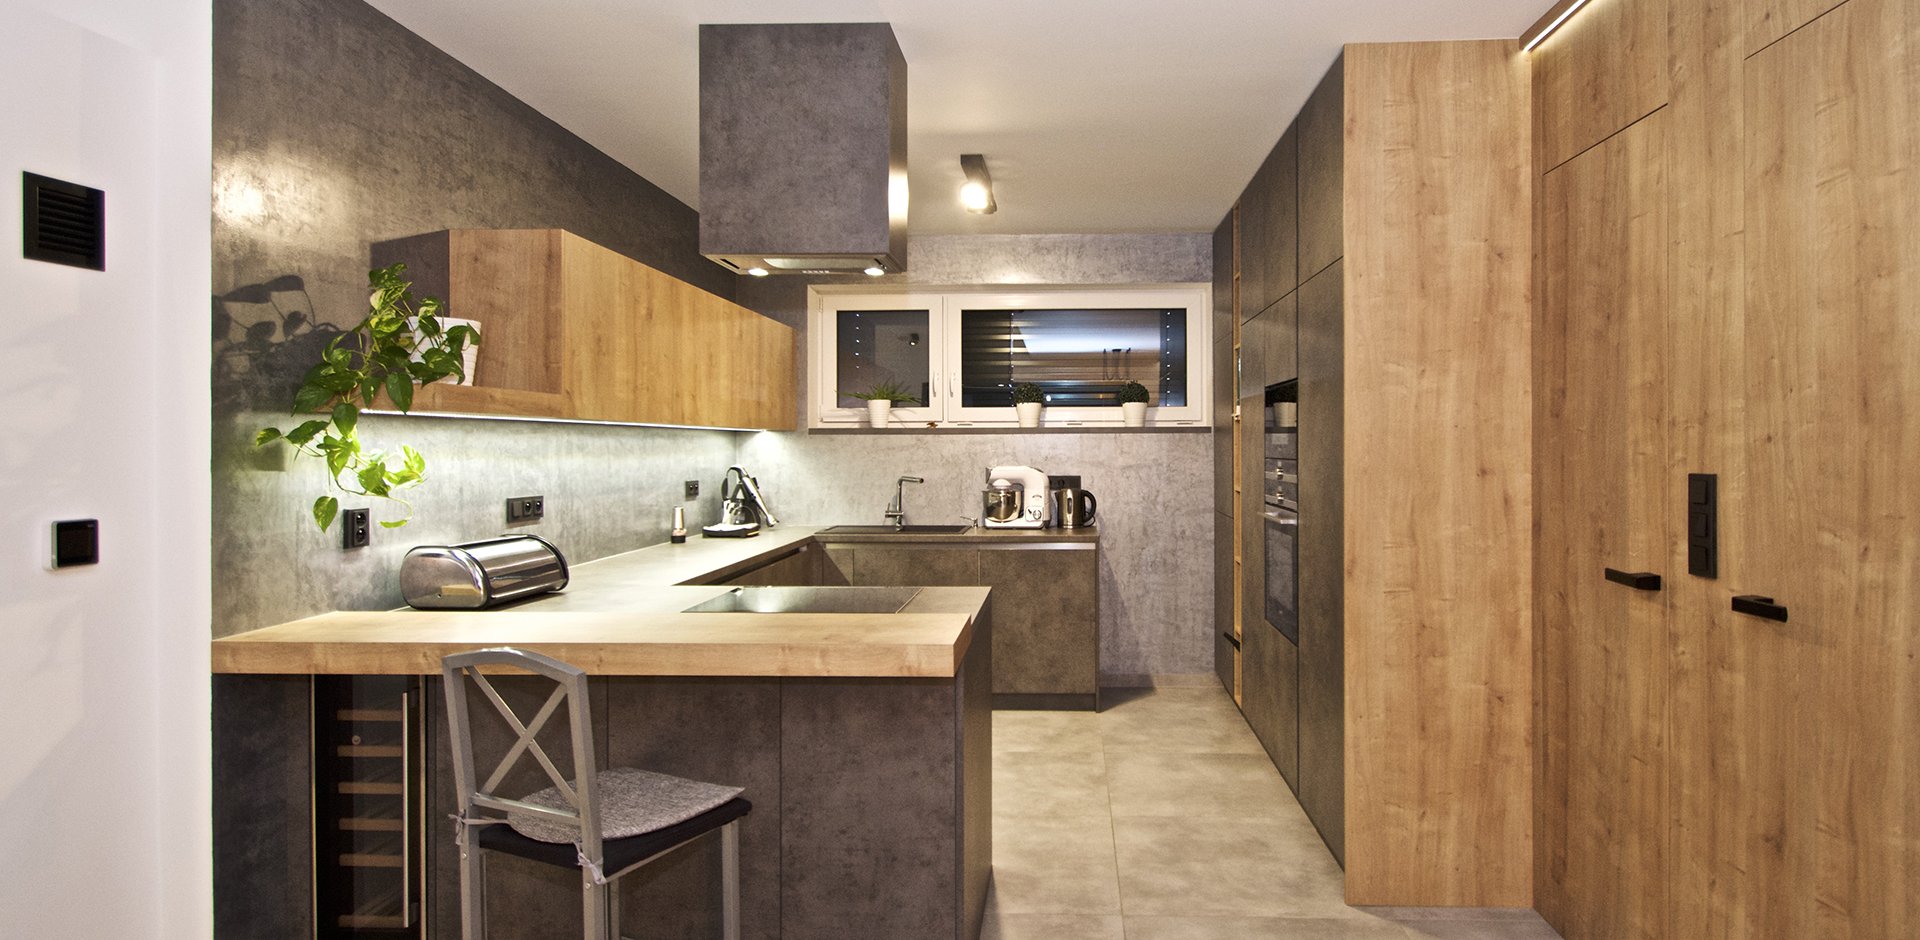 Kuchyně v betonu - 1